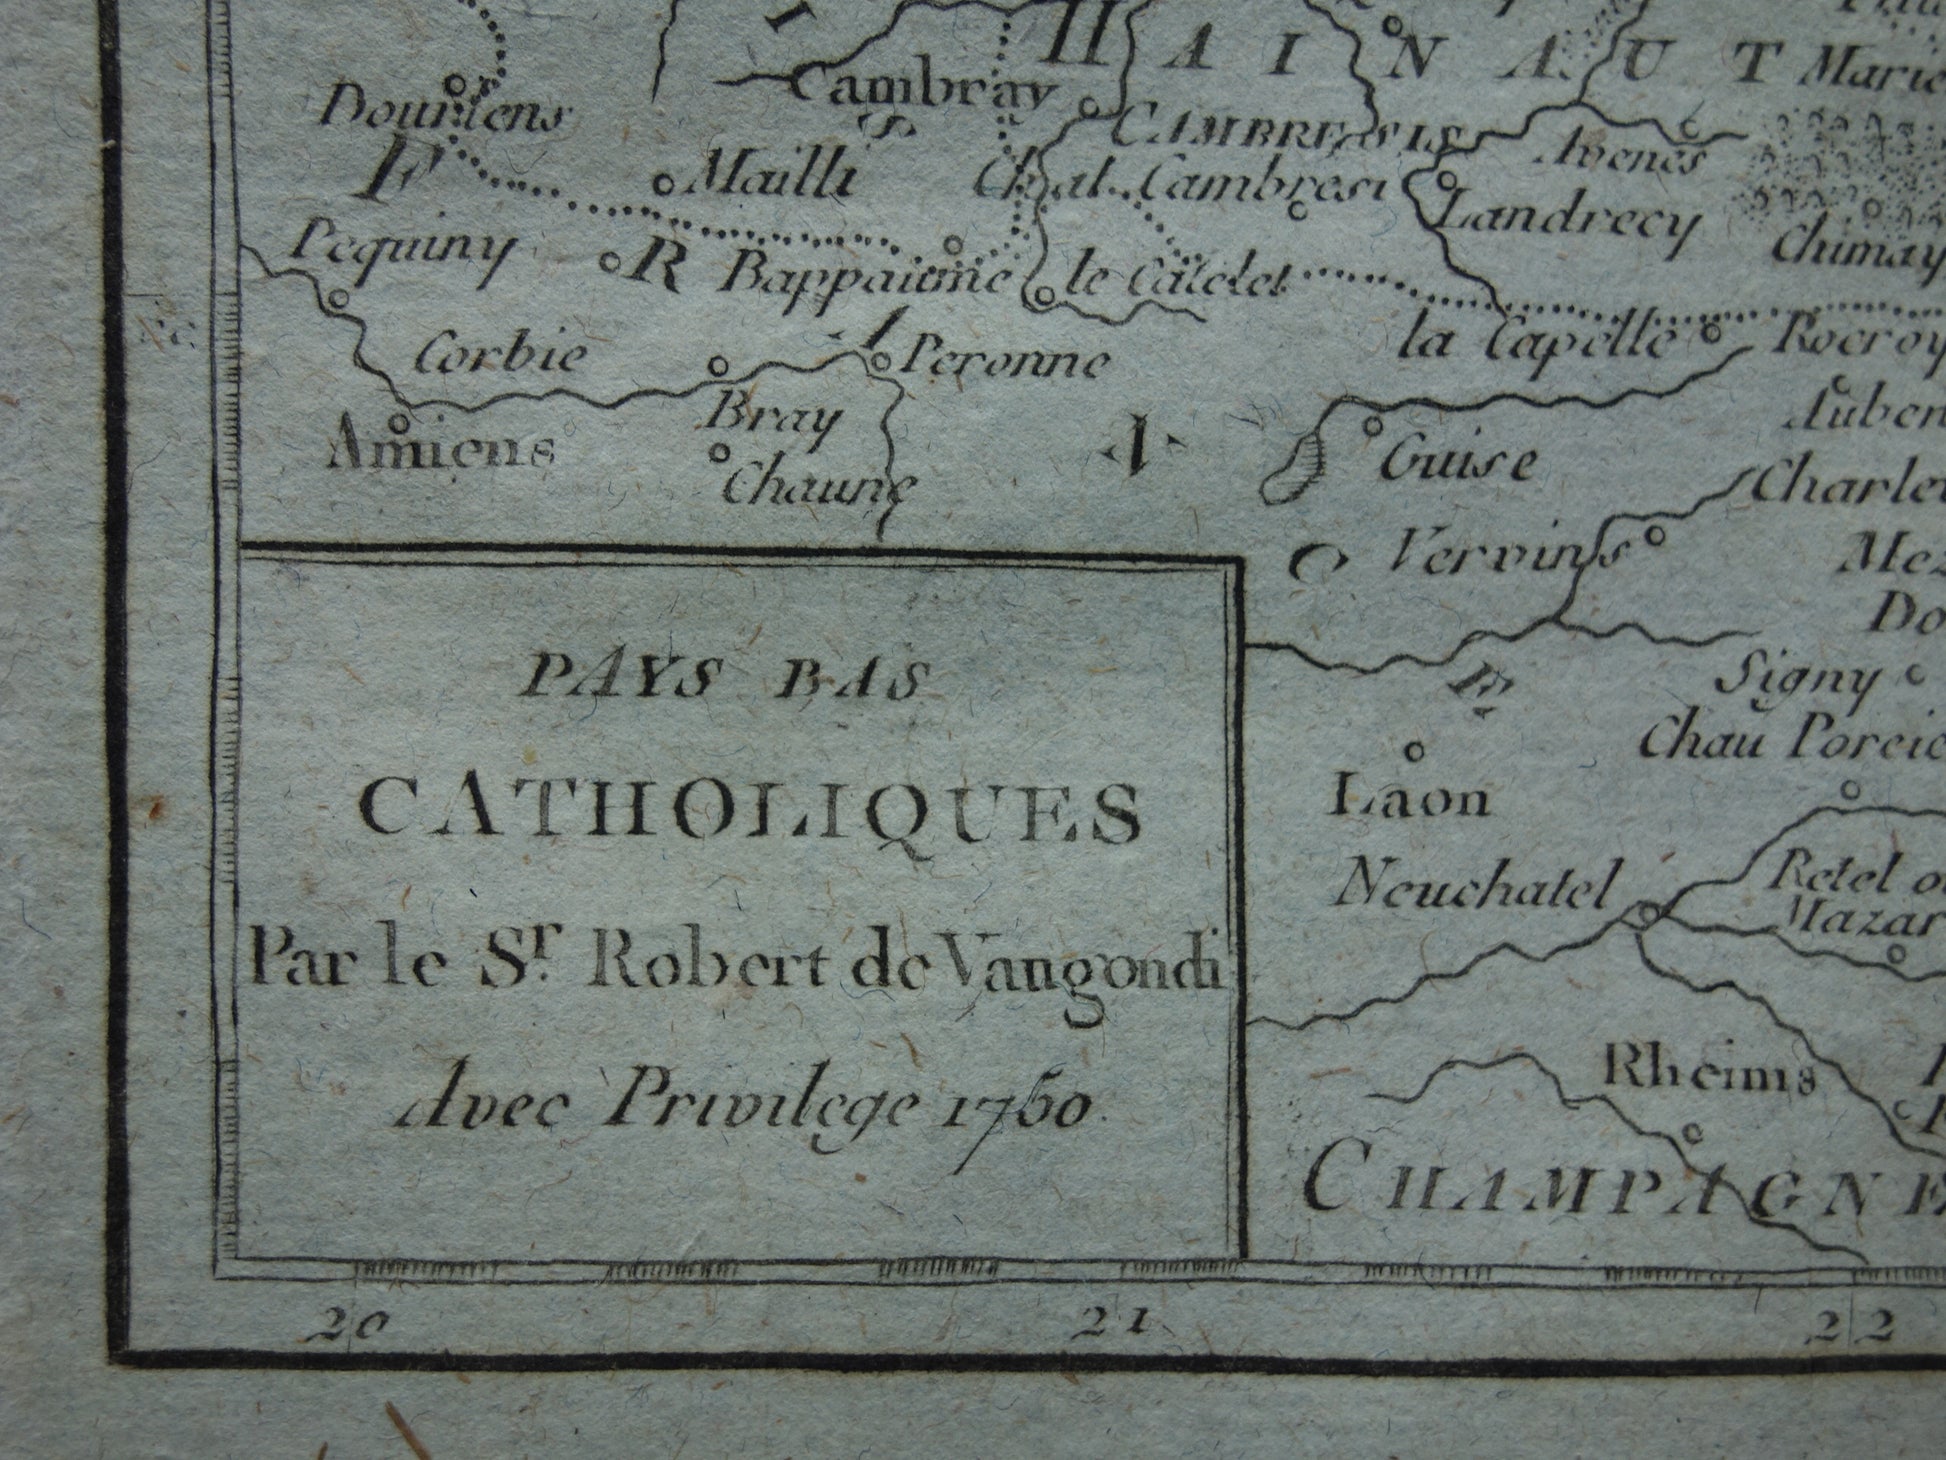 Pays Bas Catholiques Robert de Vaugondy 1750